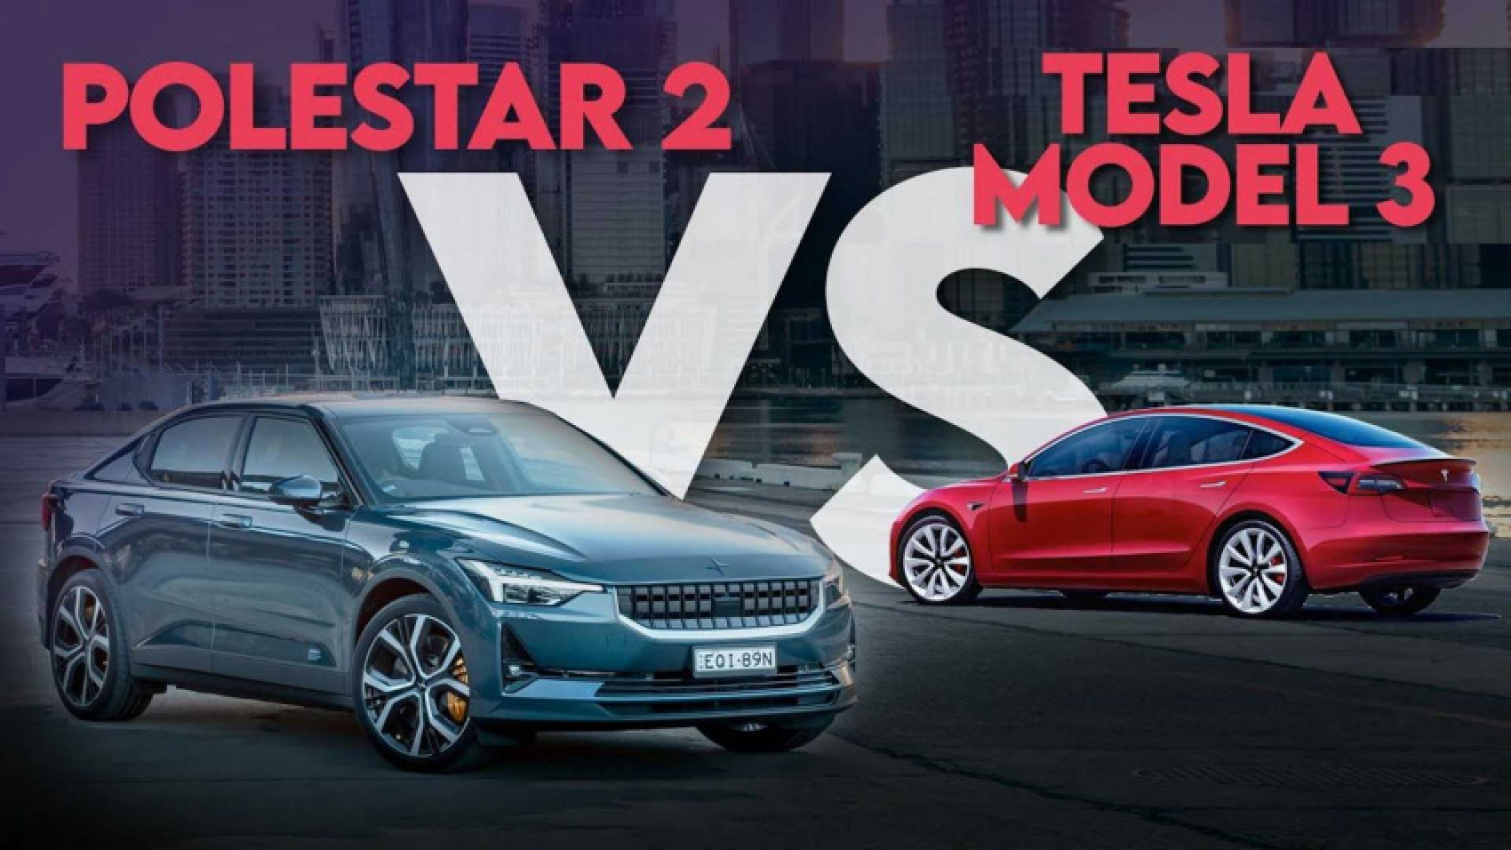 autos, cars, evs, polestar, reviews, tesla, tesla model 3, vnex, tesla model 3 versus polestar 2: which is best?